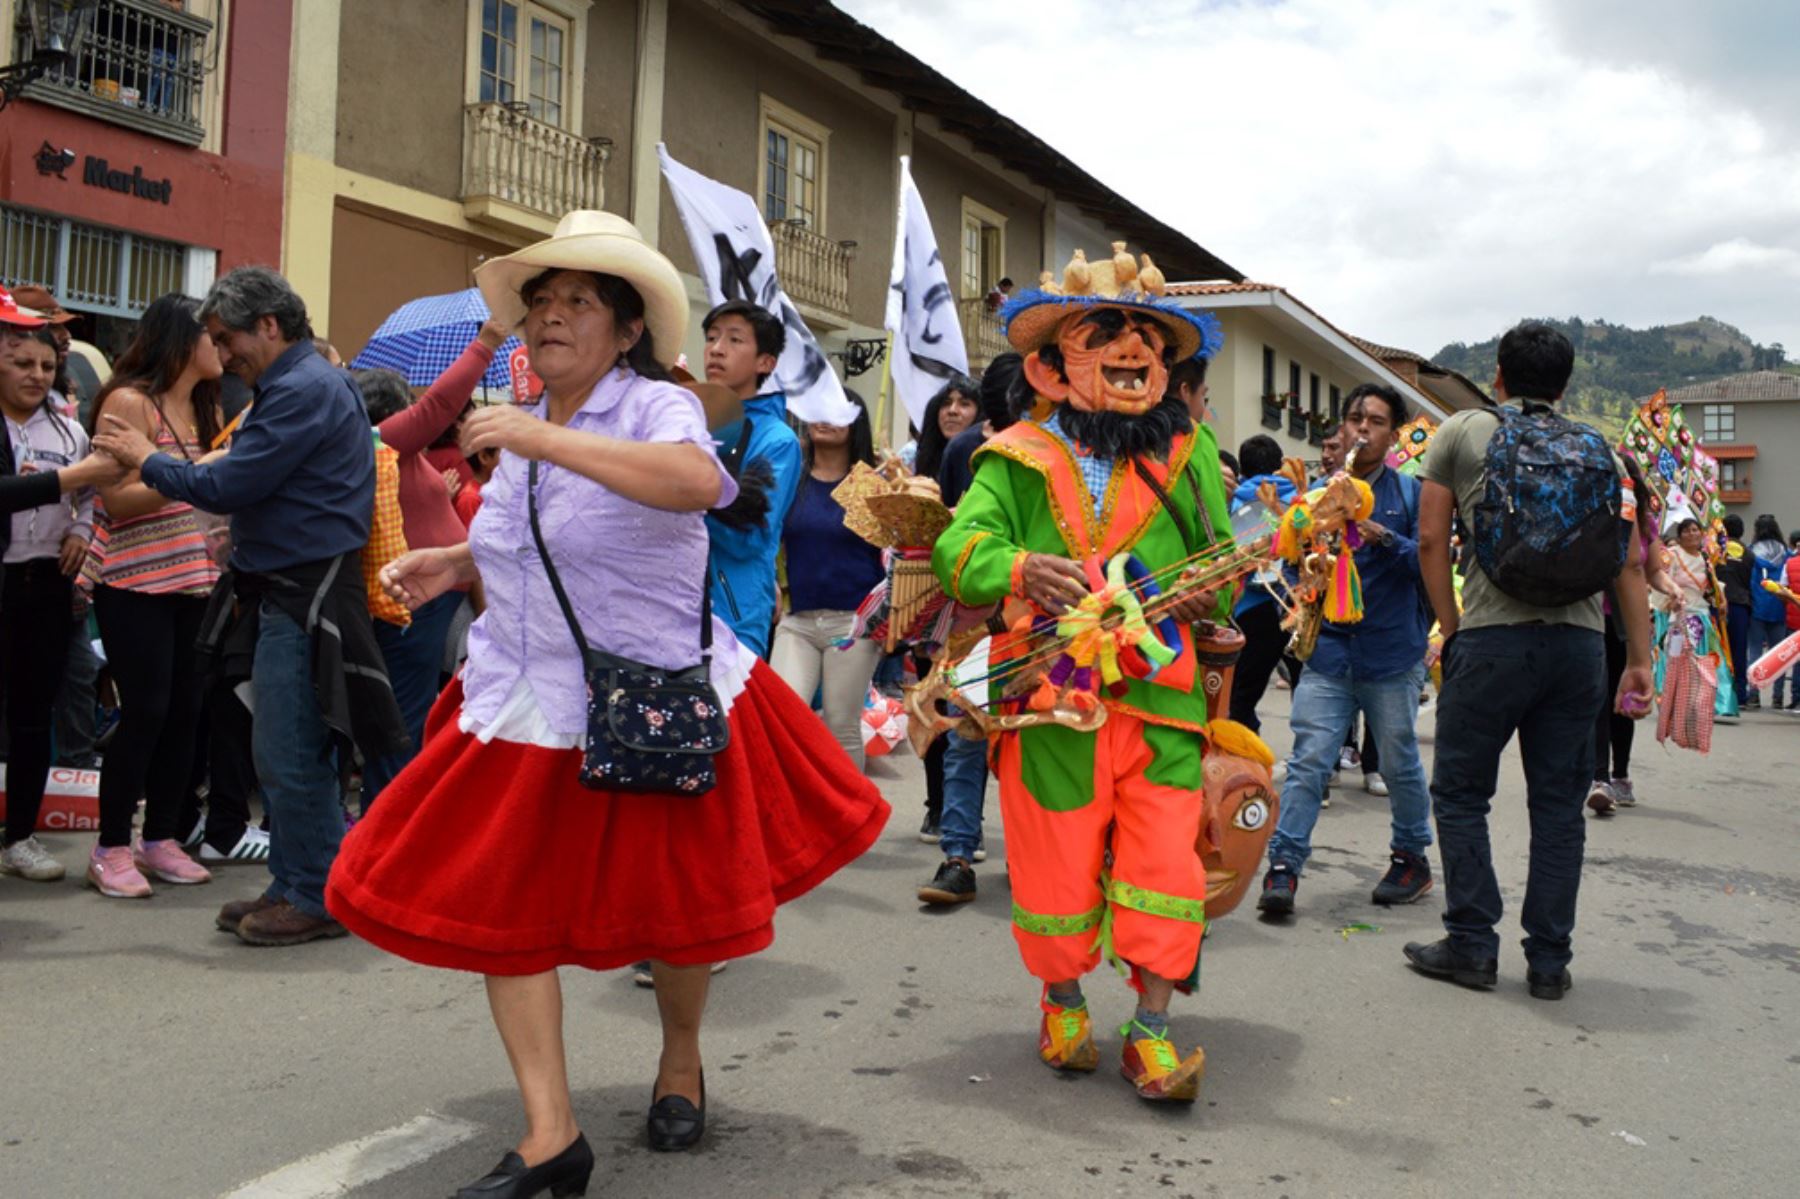 El Bando de Carnaval recorrió las calles de Cajamarca para anunciar el inicio de la fiesta popular que congrega a pobladores y turistas.